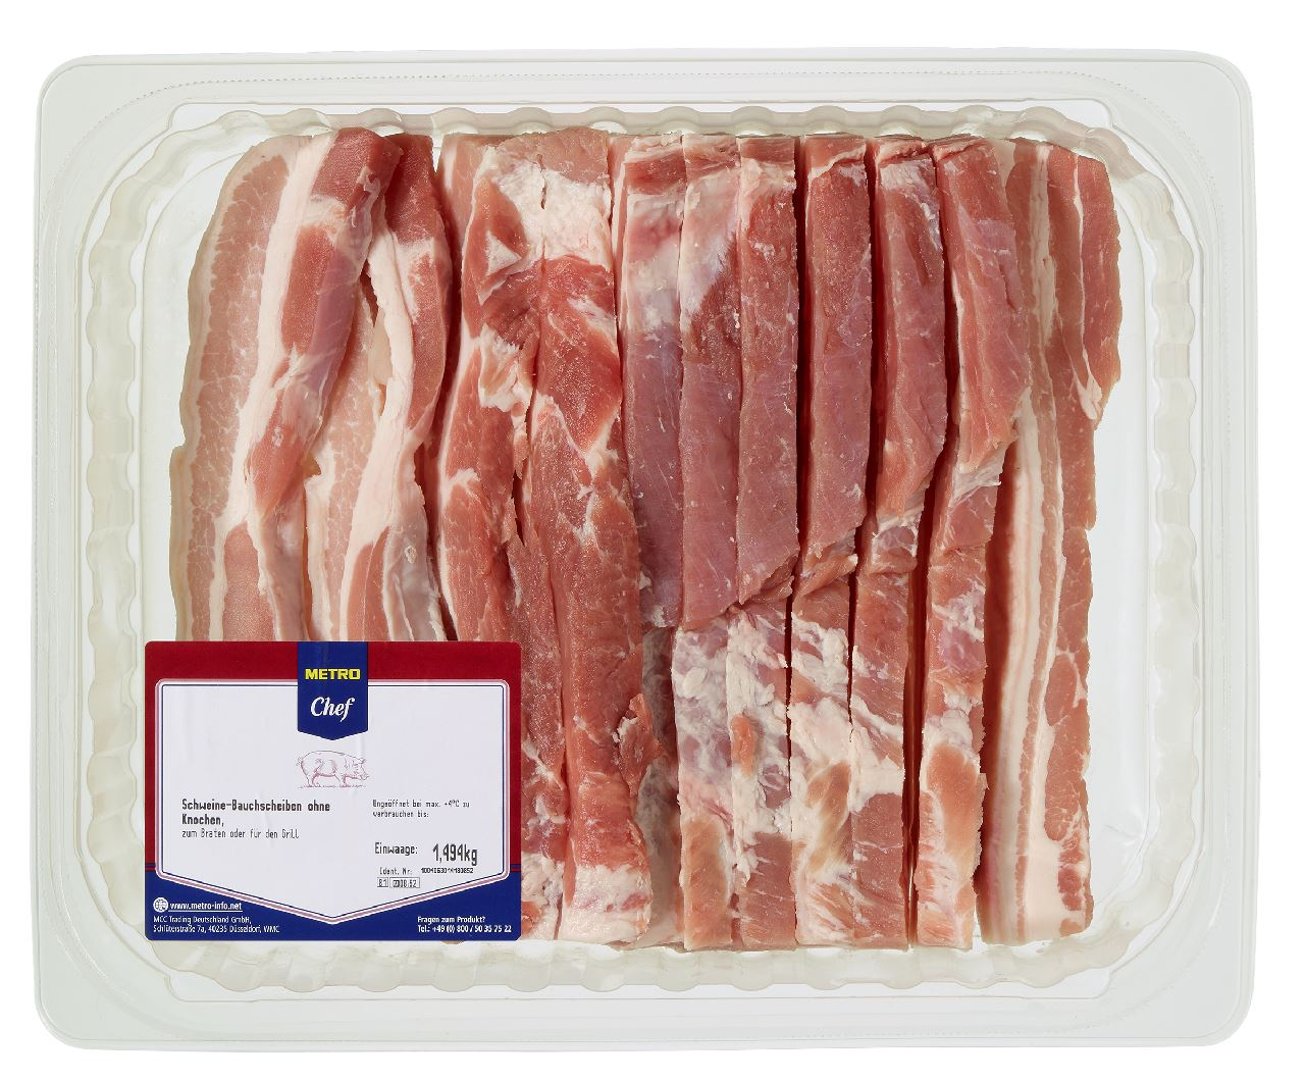 METRO Chef - QS Schweinebauch in Scheiben gekühlt ca. 1,5 kg, ca. 8 - 10 Stück